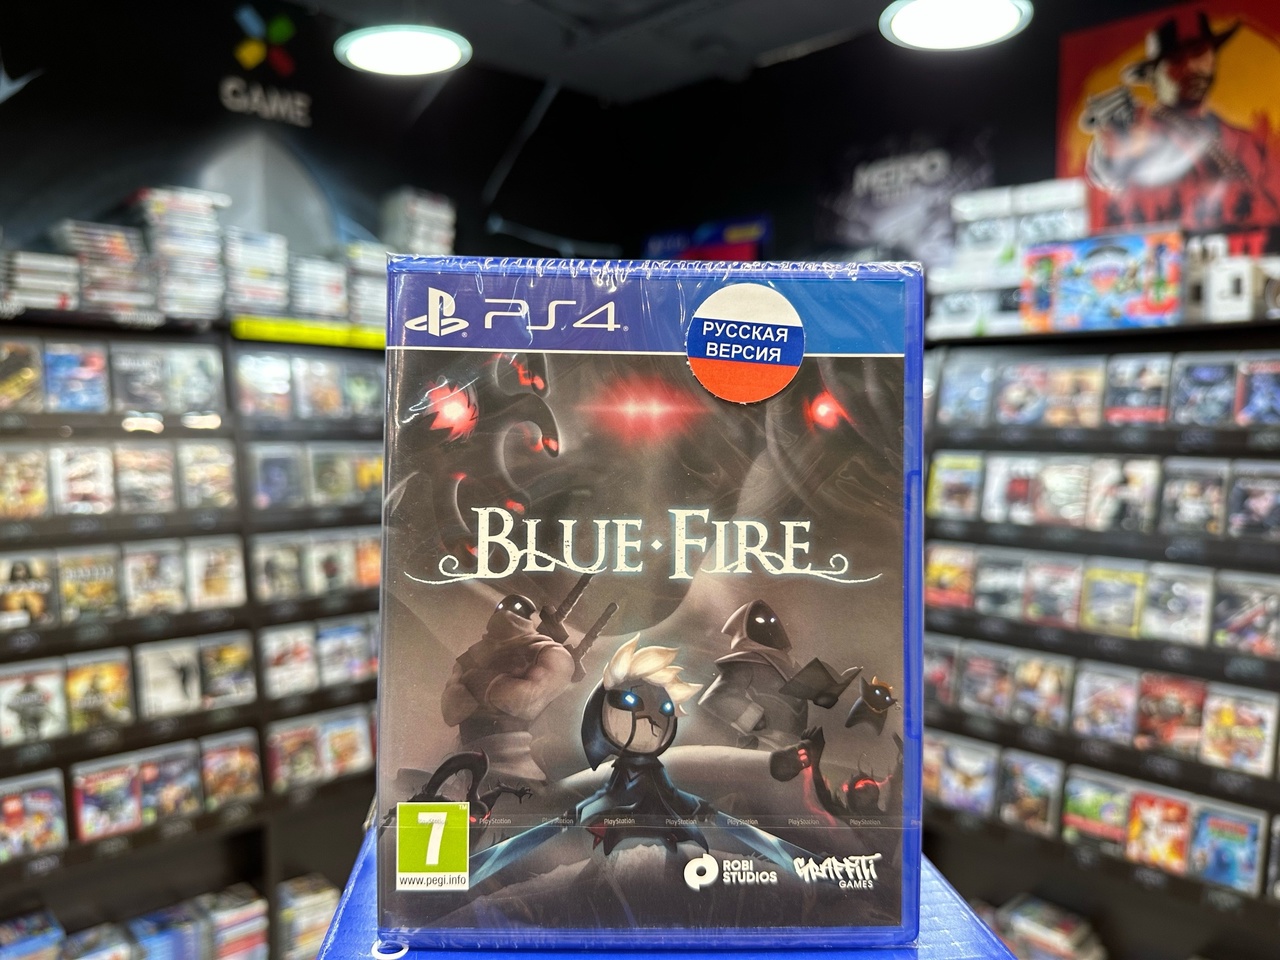 Blue Fire PS4